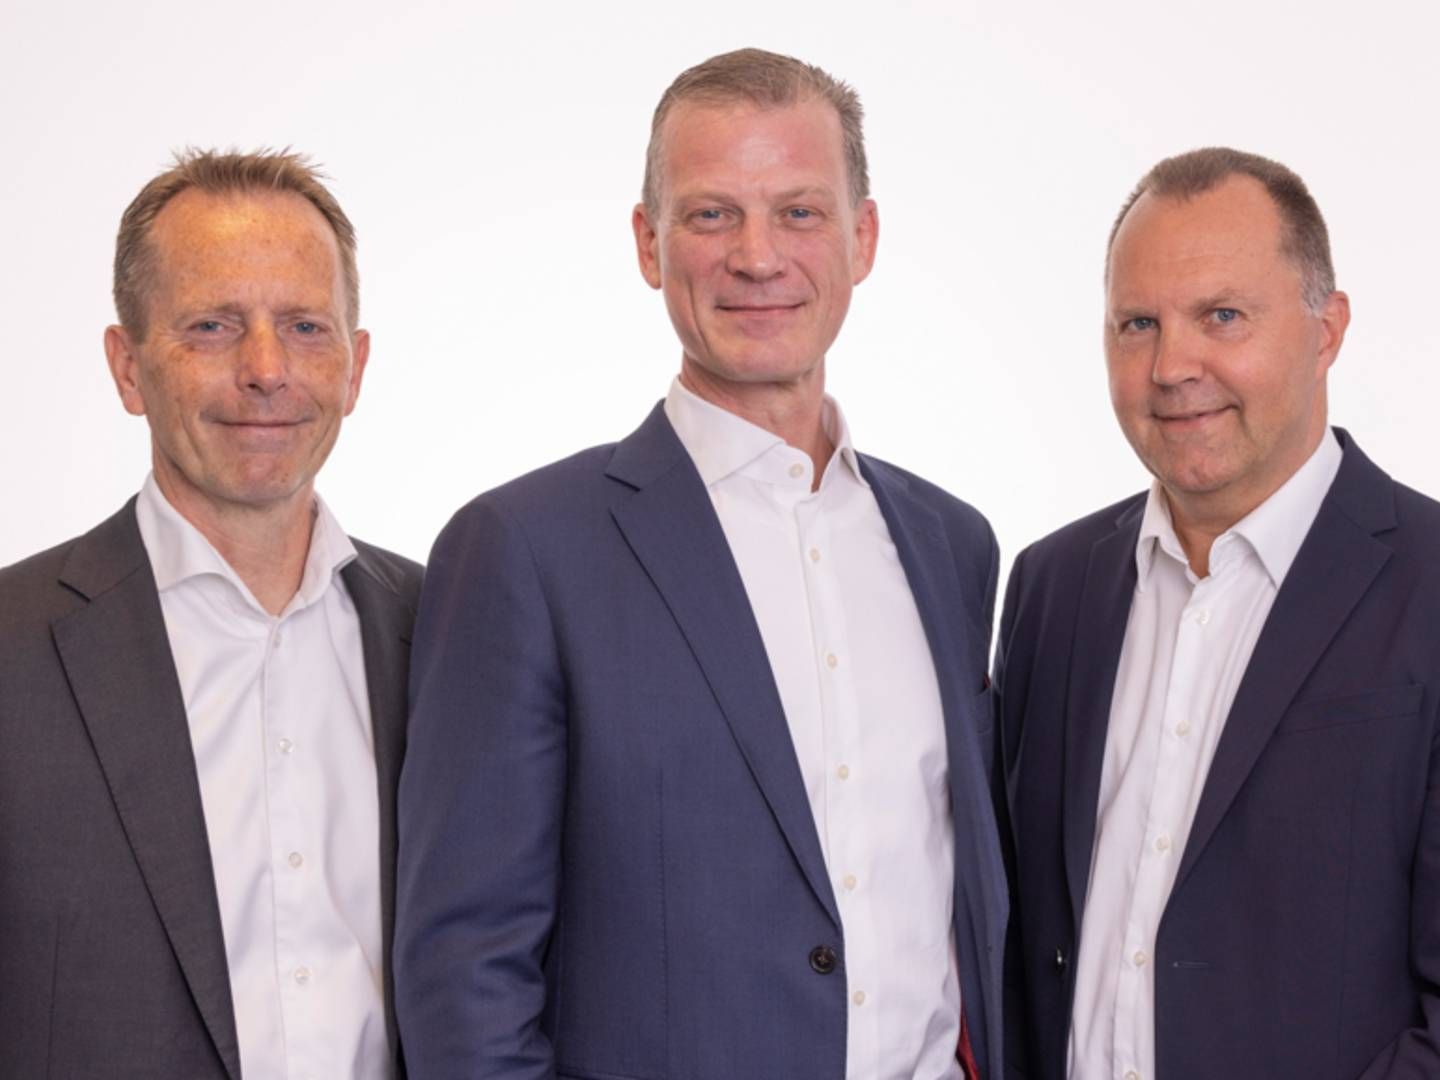 Fra venstre ses Henrik Schlægel, Peter Helmer Sørensen og Gert Bendsen, der er gået sammen om at skabe NorthHouse Partners. | Foto: NorthHouse Partners / PR